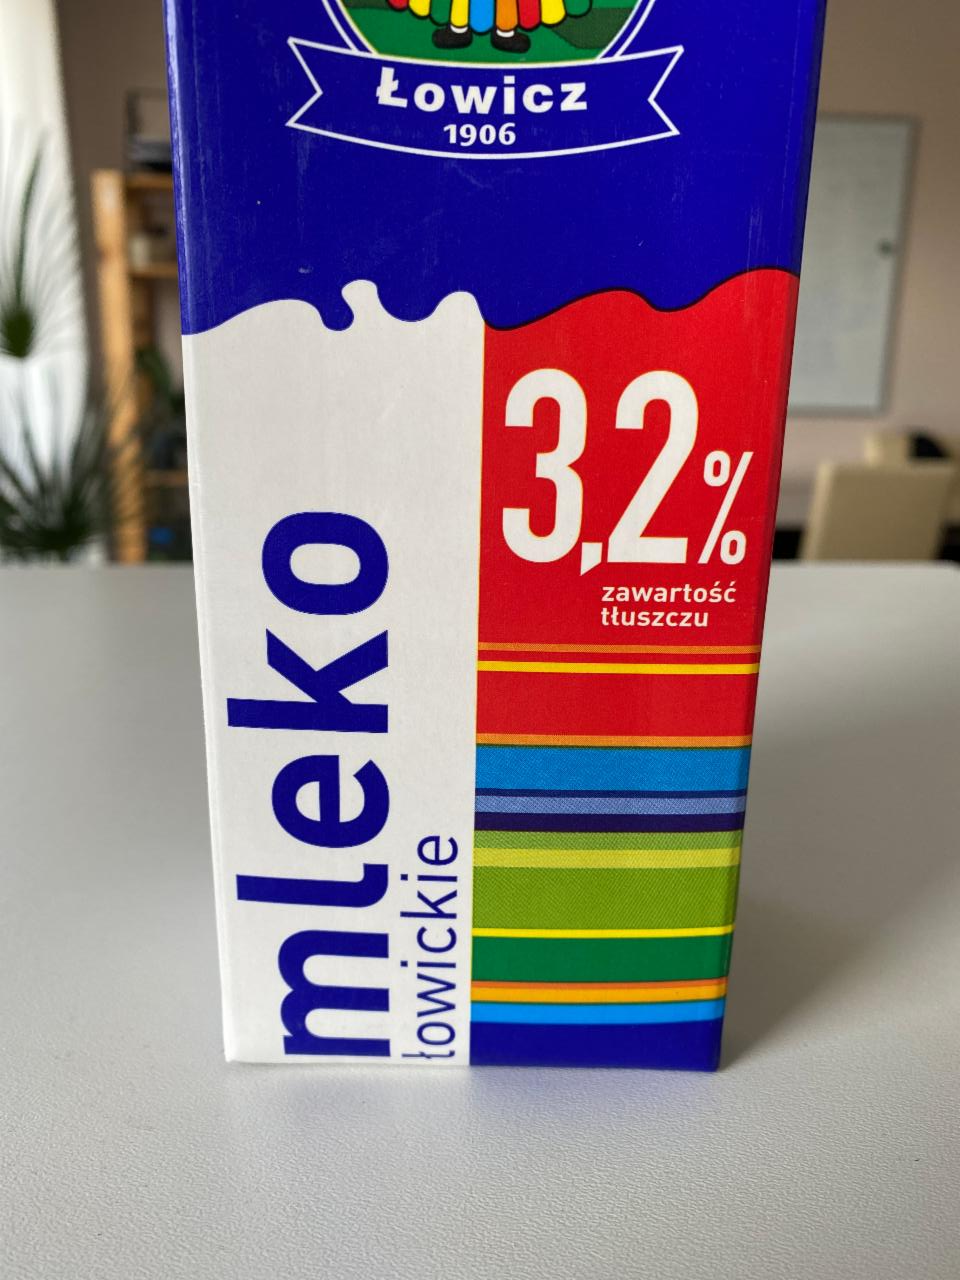 Фото - Молоко mleko łowickie 3.2% Lowicz